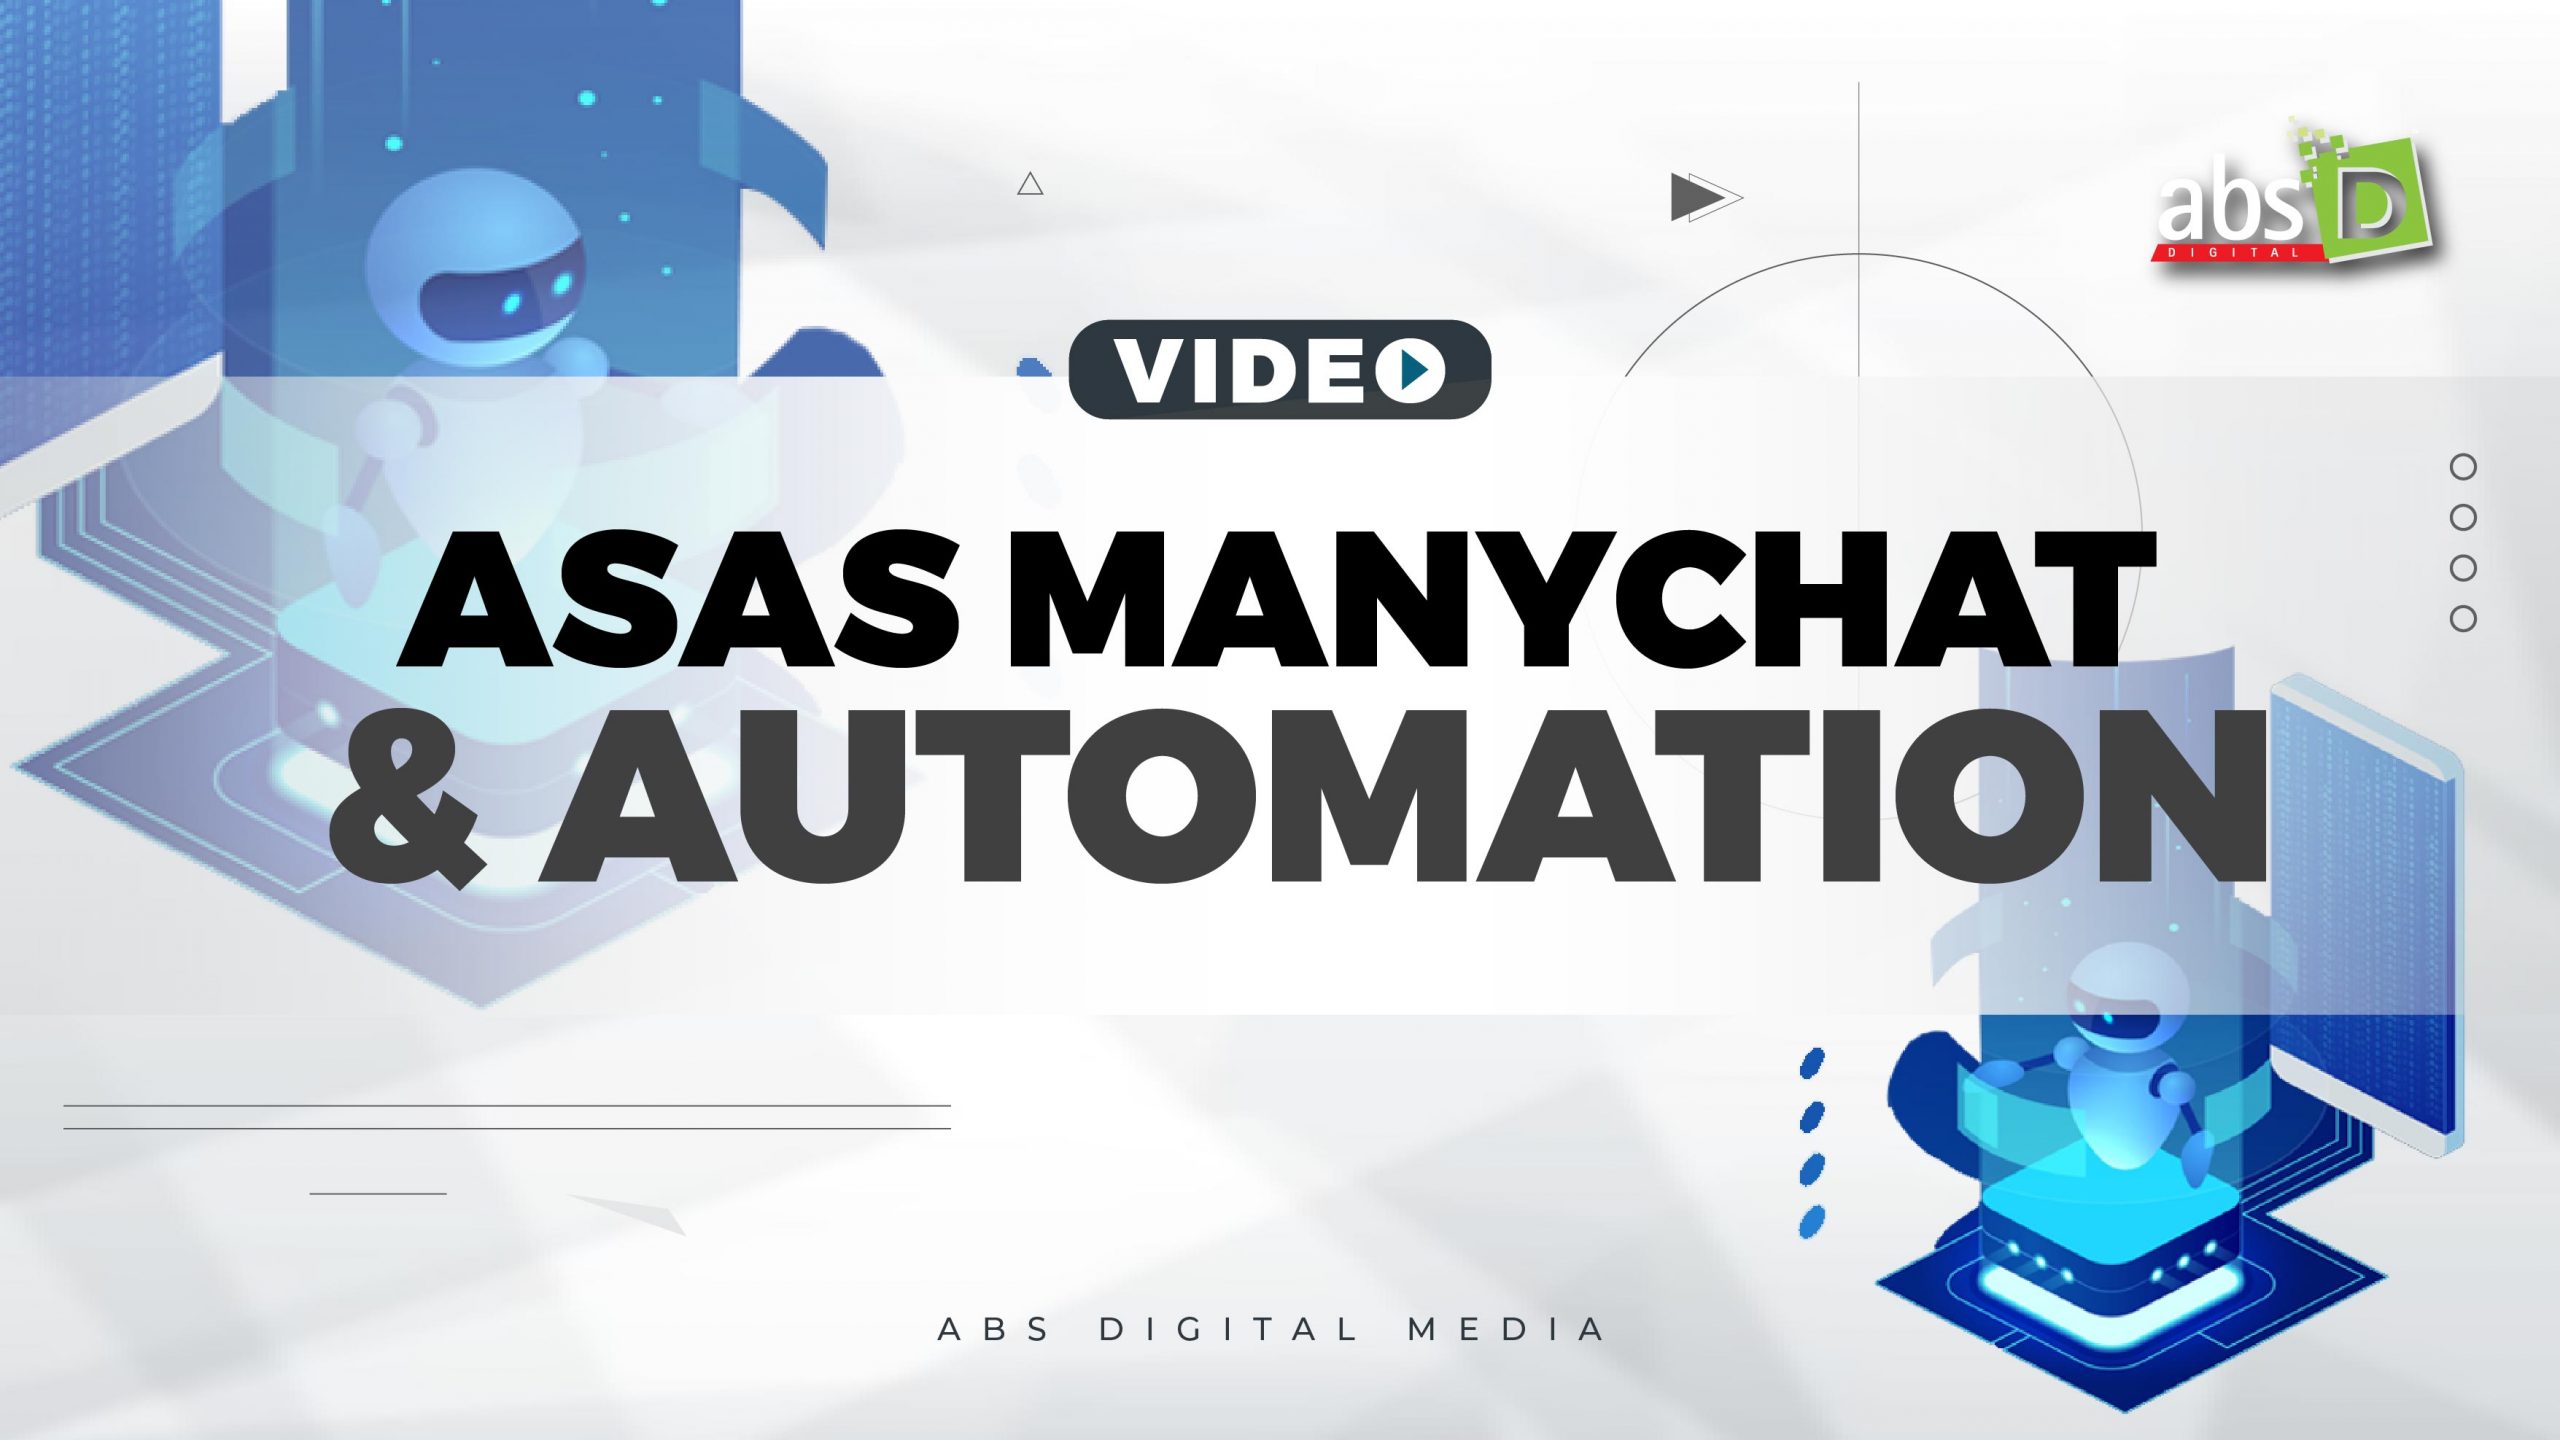 Asas Manychat dan Automation